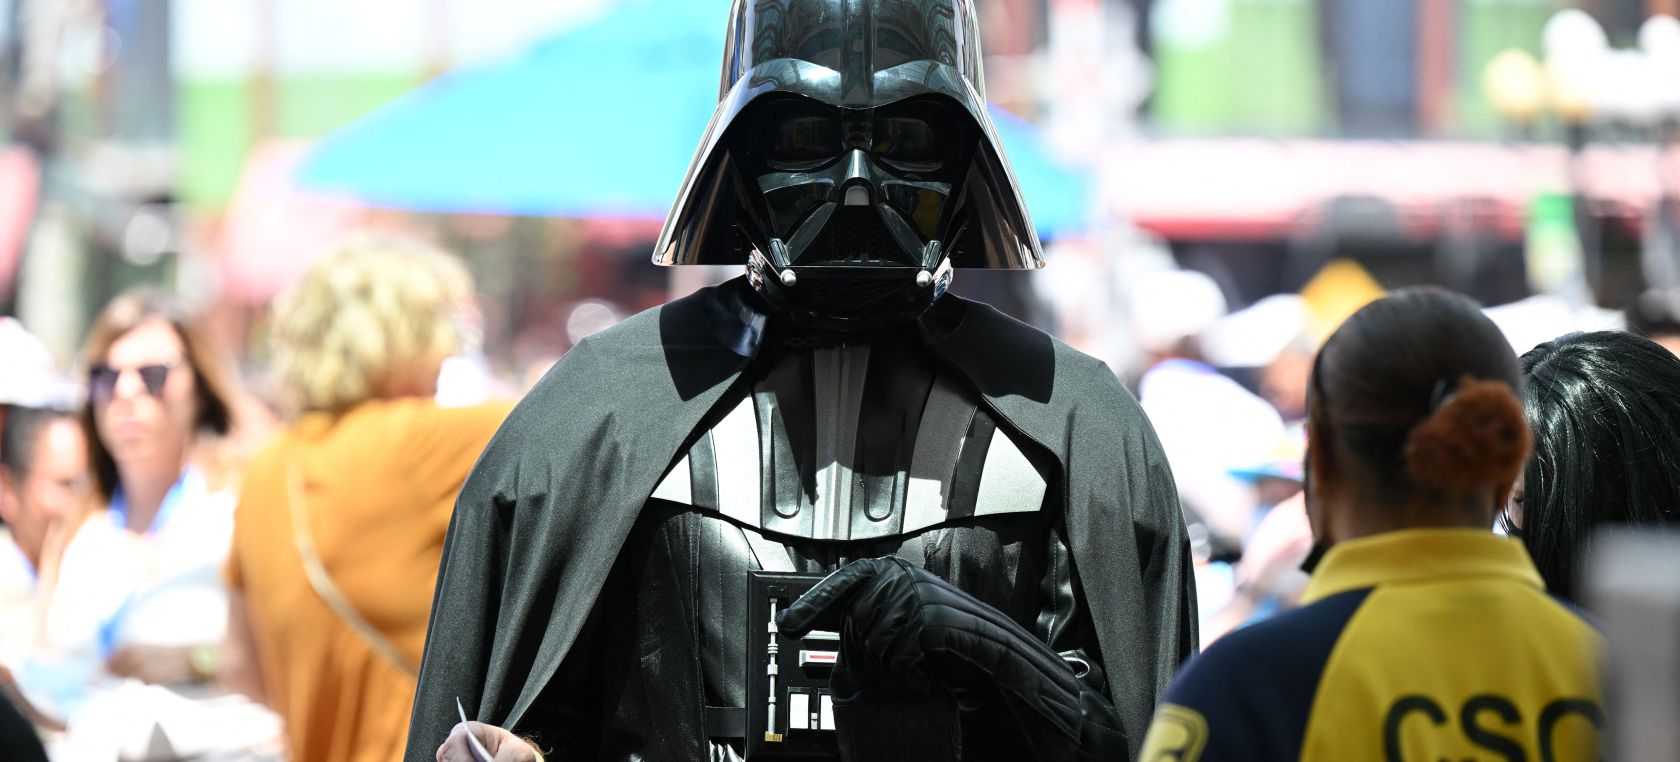 La voz de Darth Vader se retira oficialmente, aunque da luz verde a seguir apareciendo en ‘Star Wars’